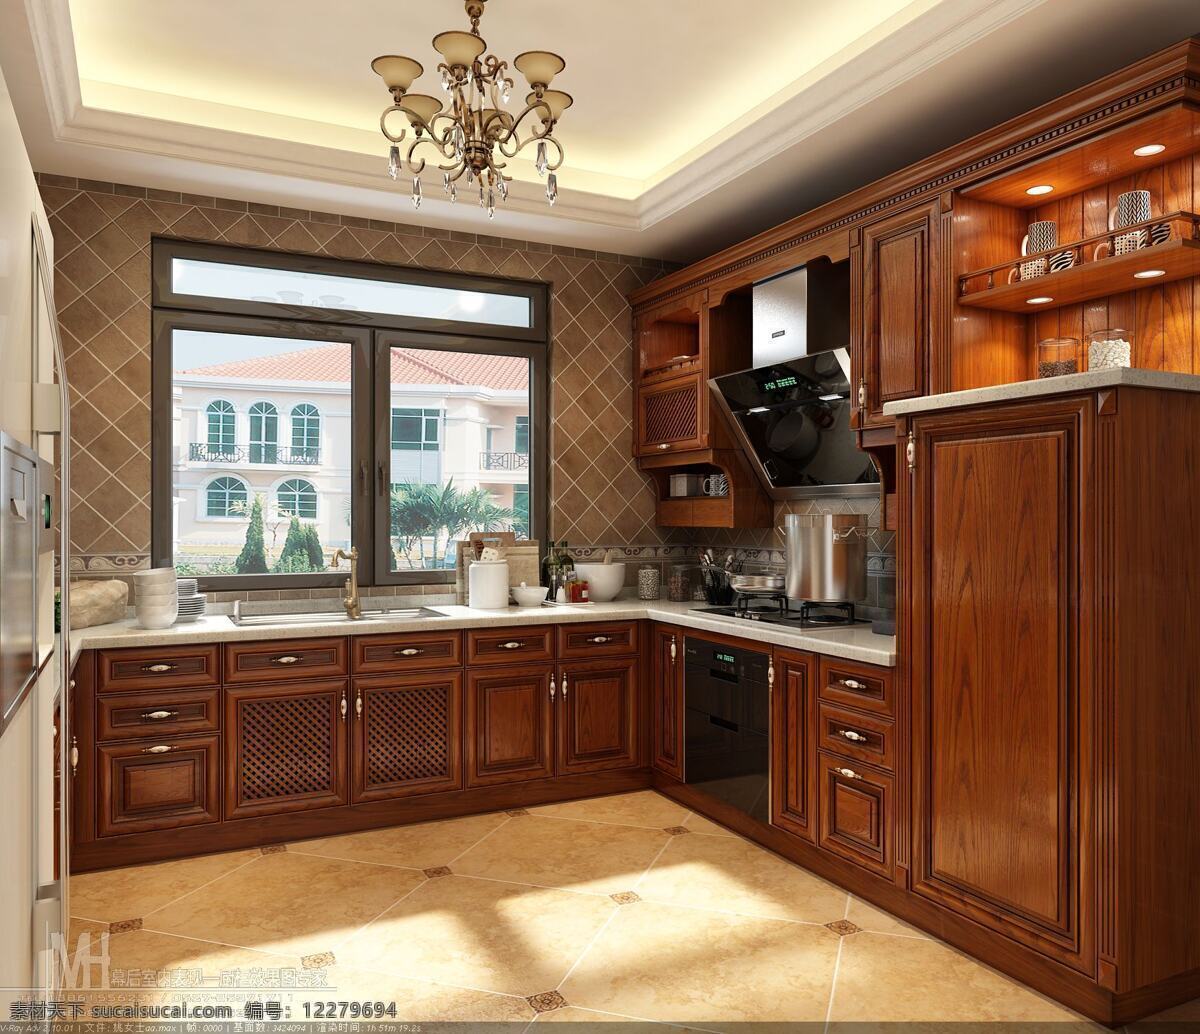 橱柜 效果图 橱柜效果图 厨房效果图 橱柜设计 厨房设计 环境设计 室内设计 黑色